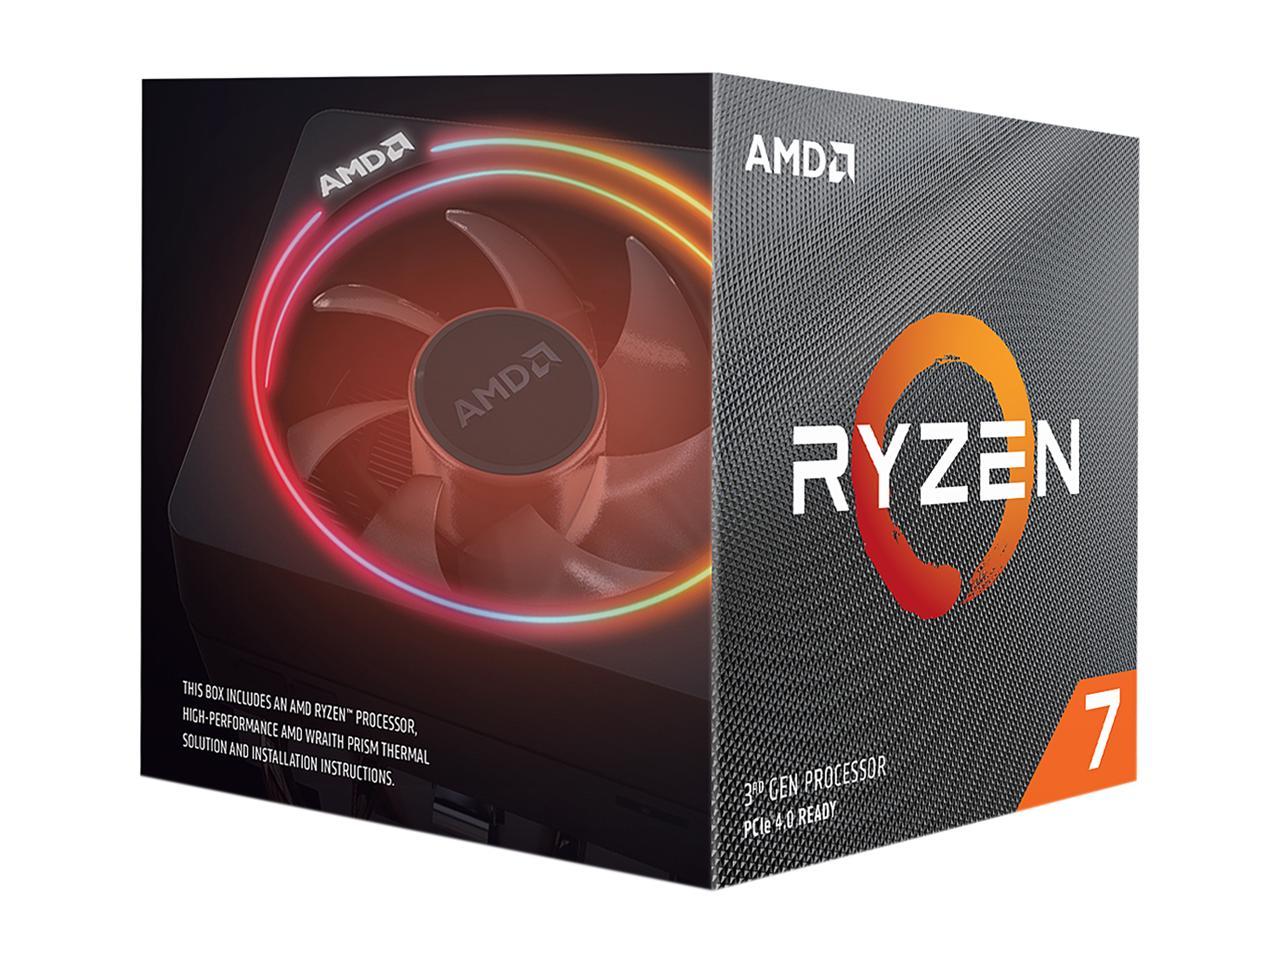 AMD Ryzen 3700x 8-core Desktop Processor